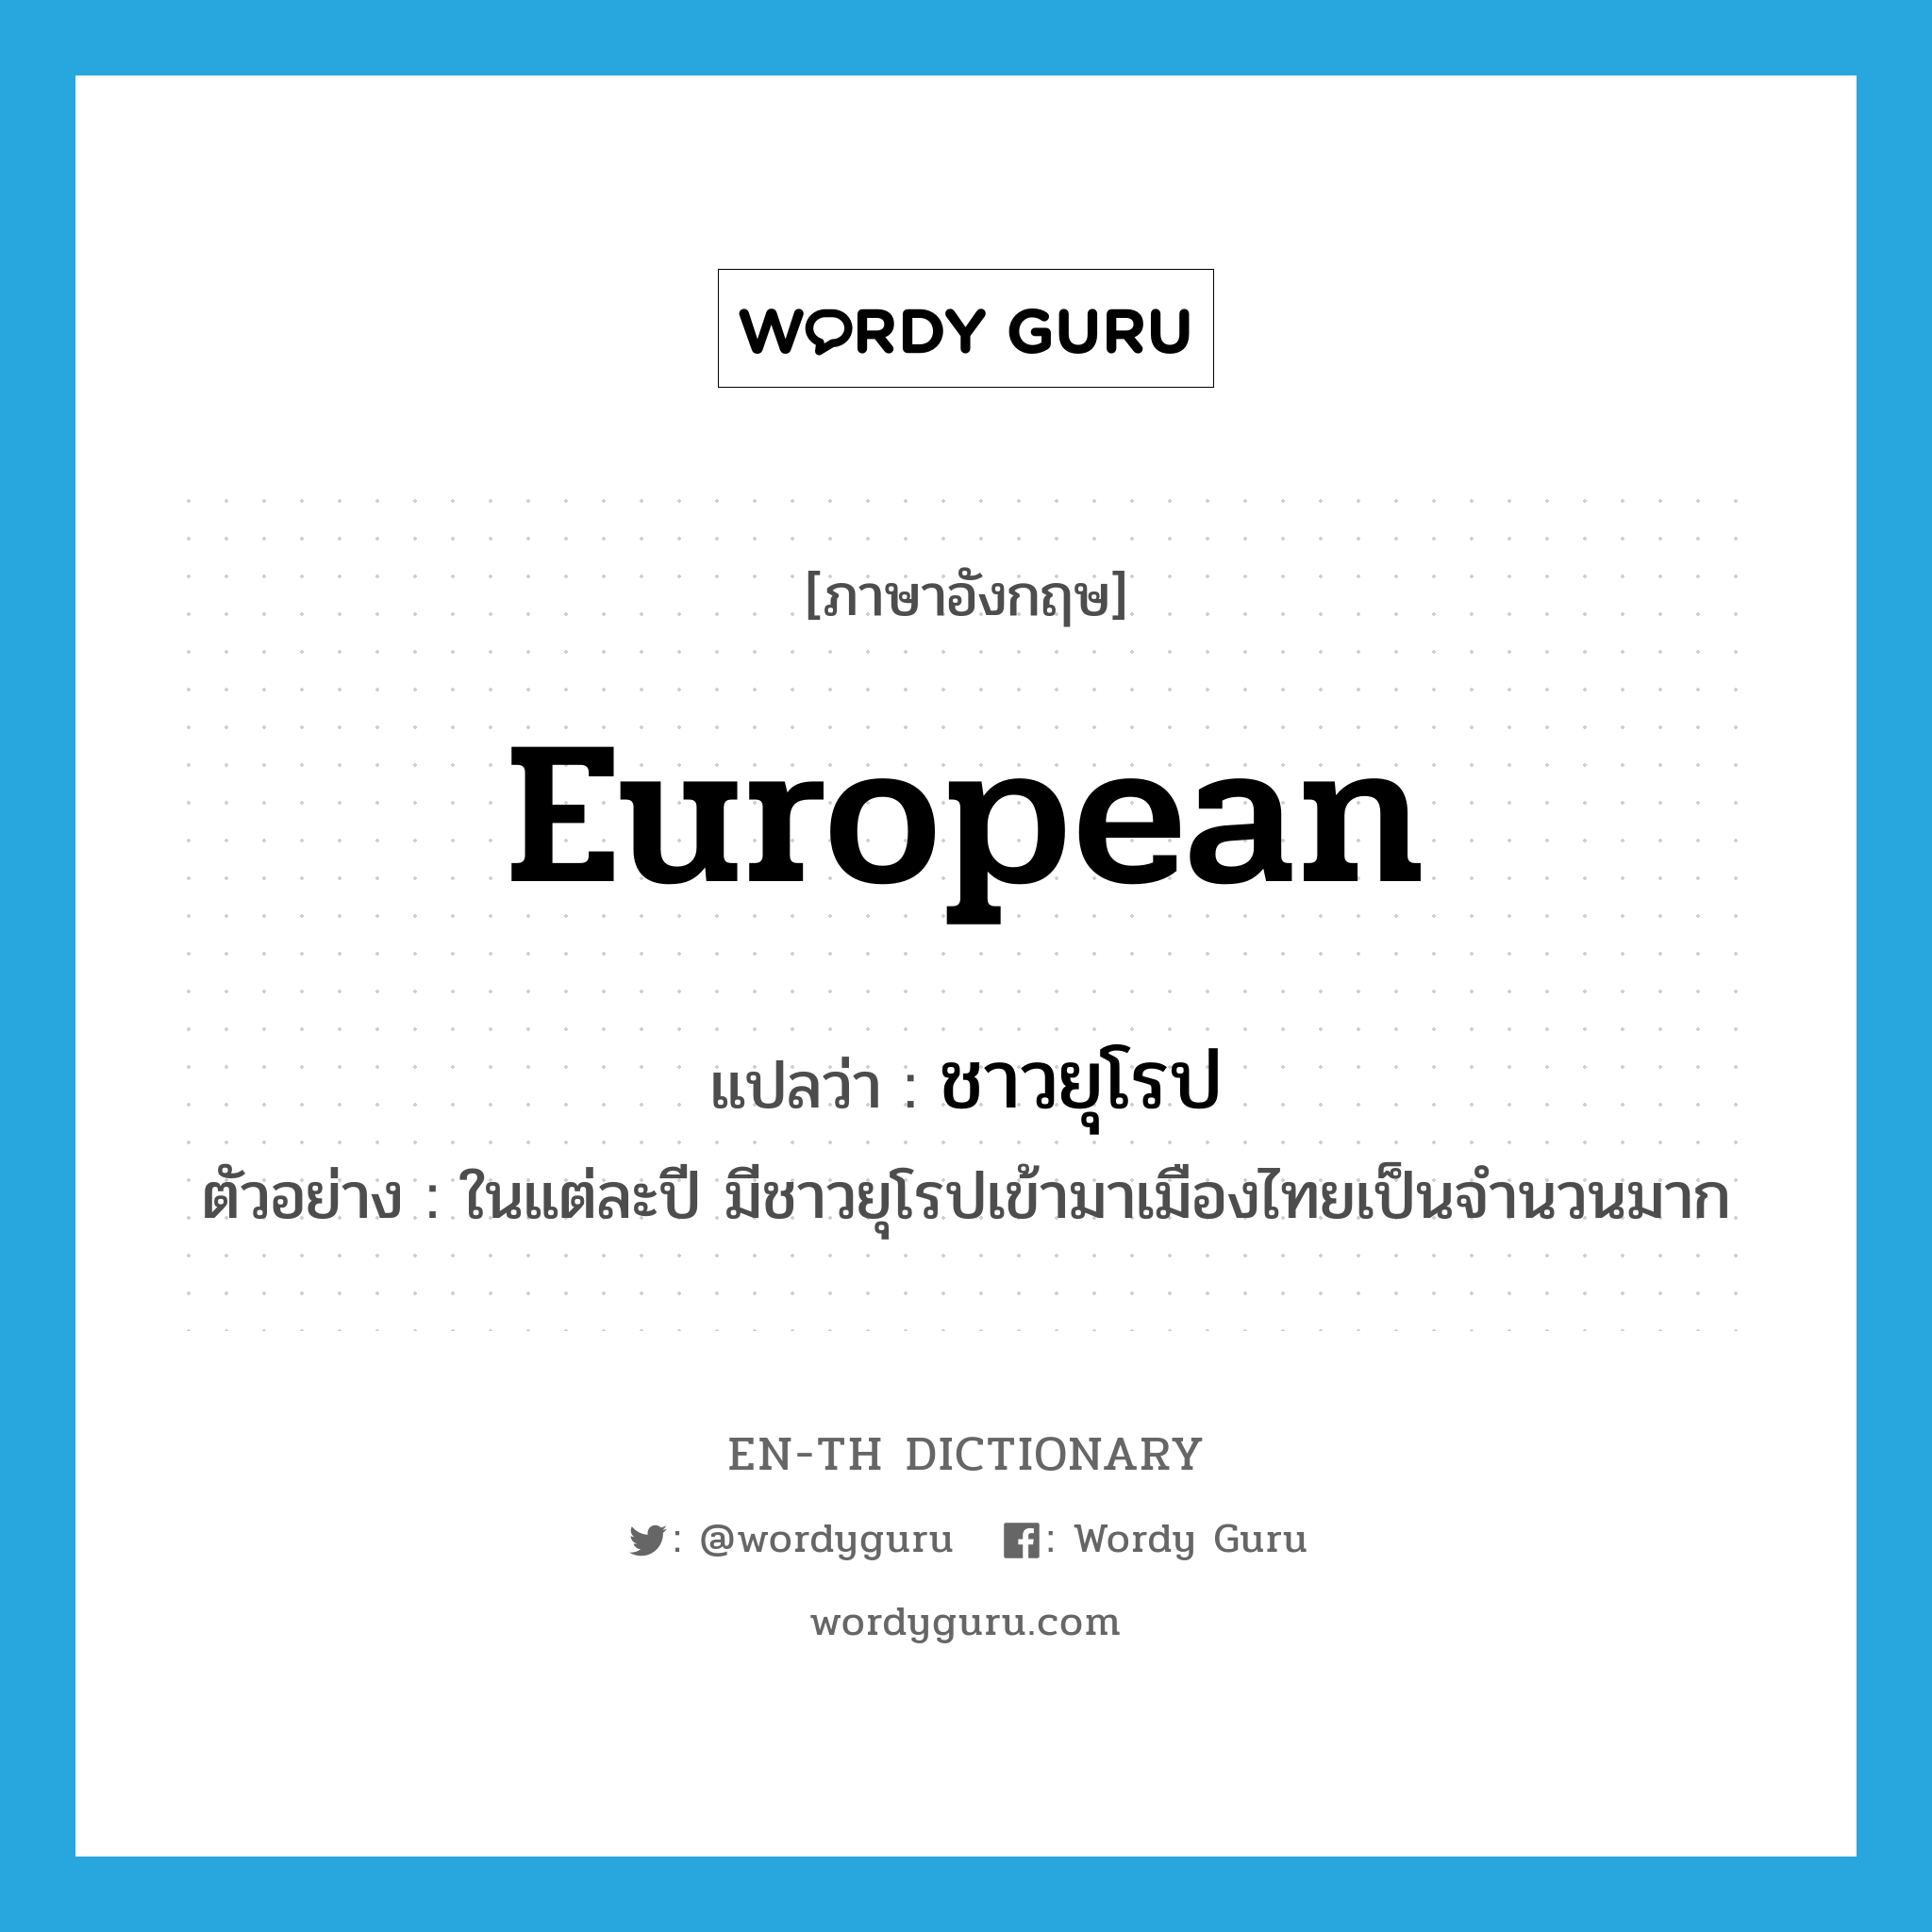 ชาวยุโรป ภาษาอังกฤษ?, คำศัพท์ภาษาอังกฤษ ชาวยุโรป แปลว่า European ประเภท N ตัวอย่าง ในแต่ละปี มีชาวยุโรปเข้ามาเมืองไทยเป็นจำนวนมาก หมวด N